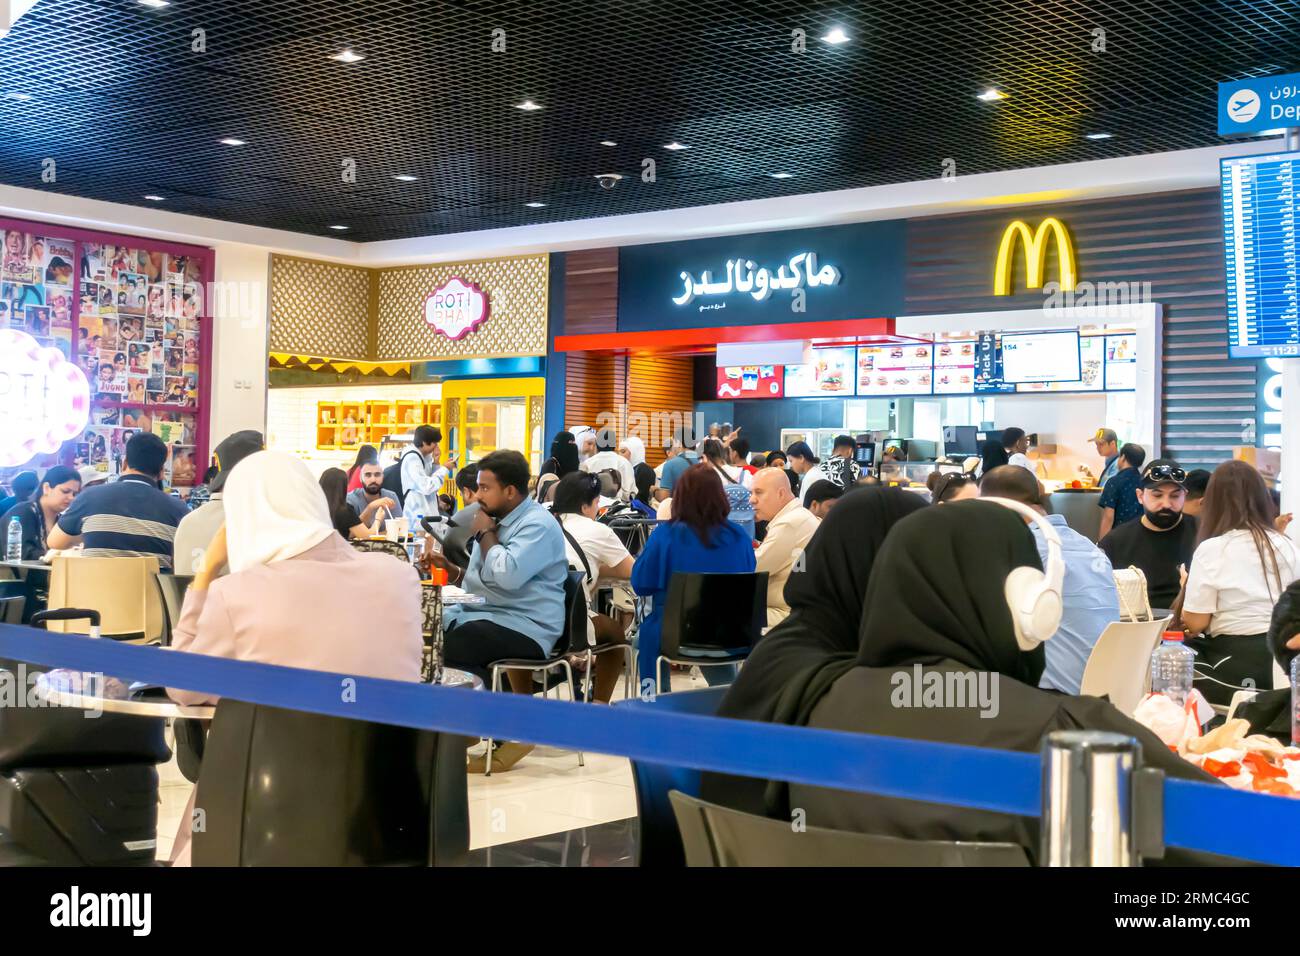 McDonalds Dubai airport cafe. McDonalds Dubai airport people tourists eating Stock Photo